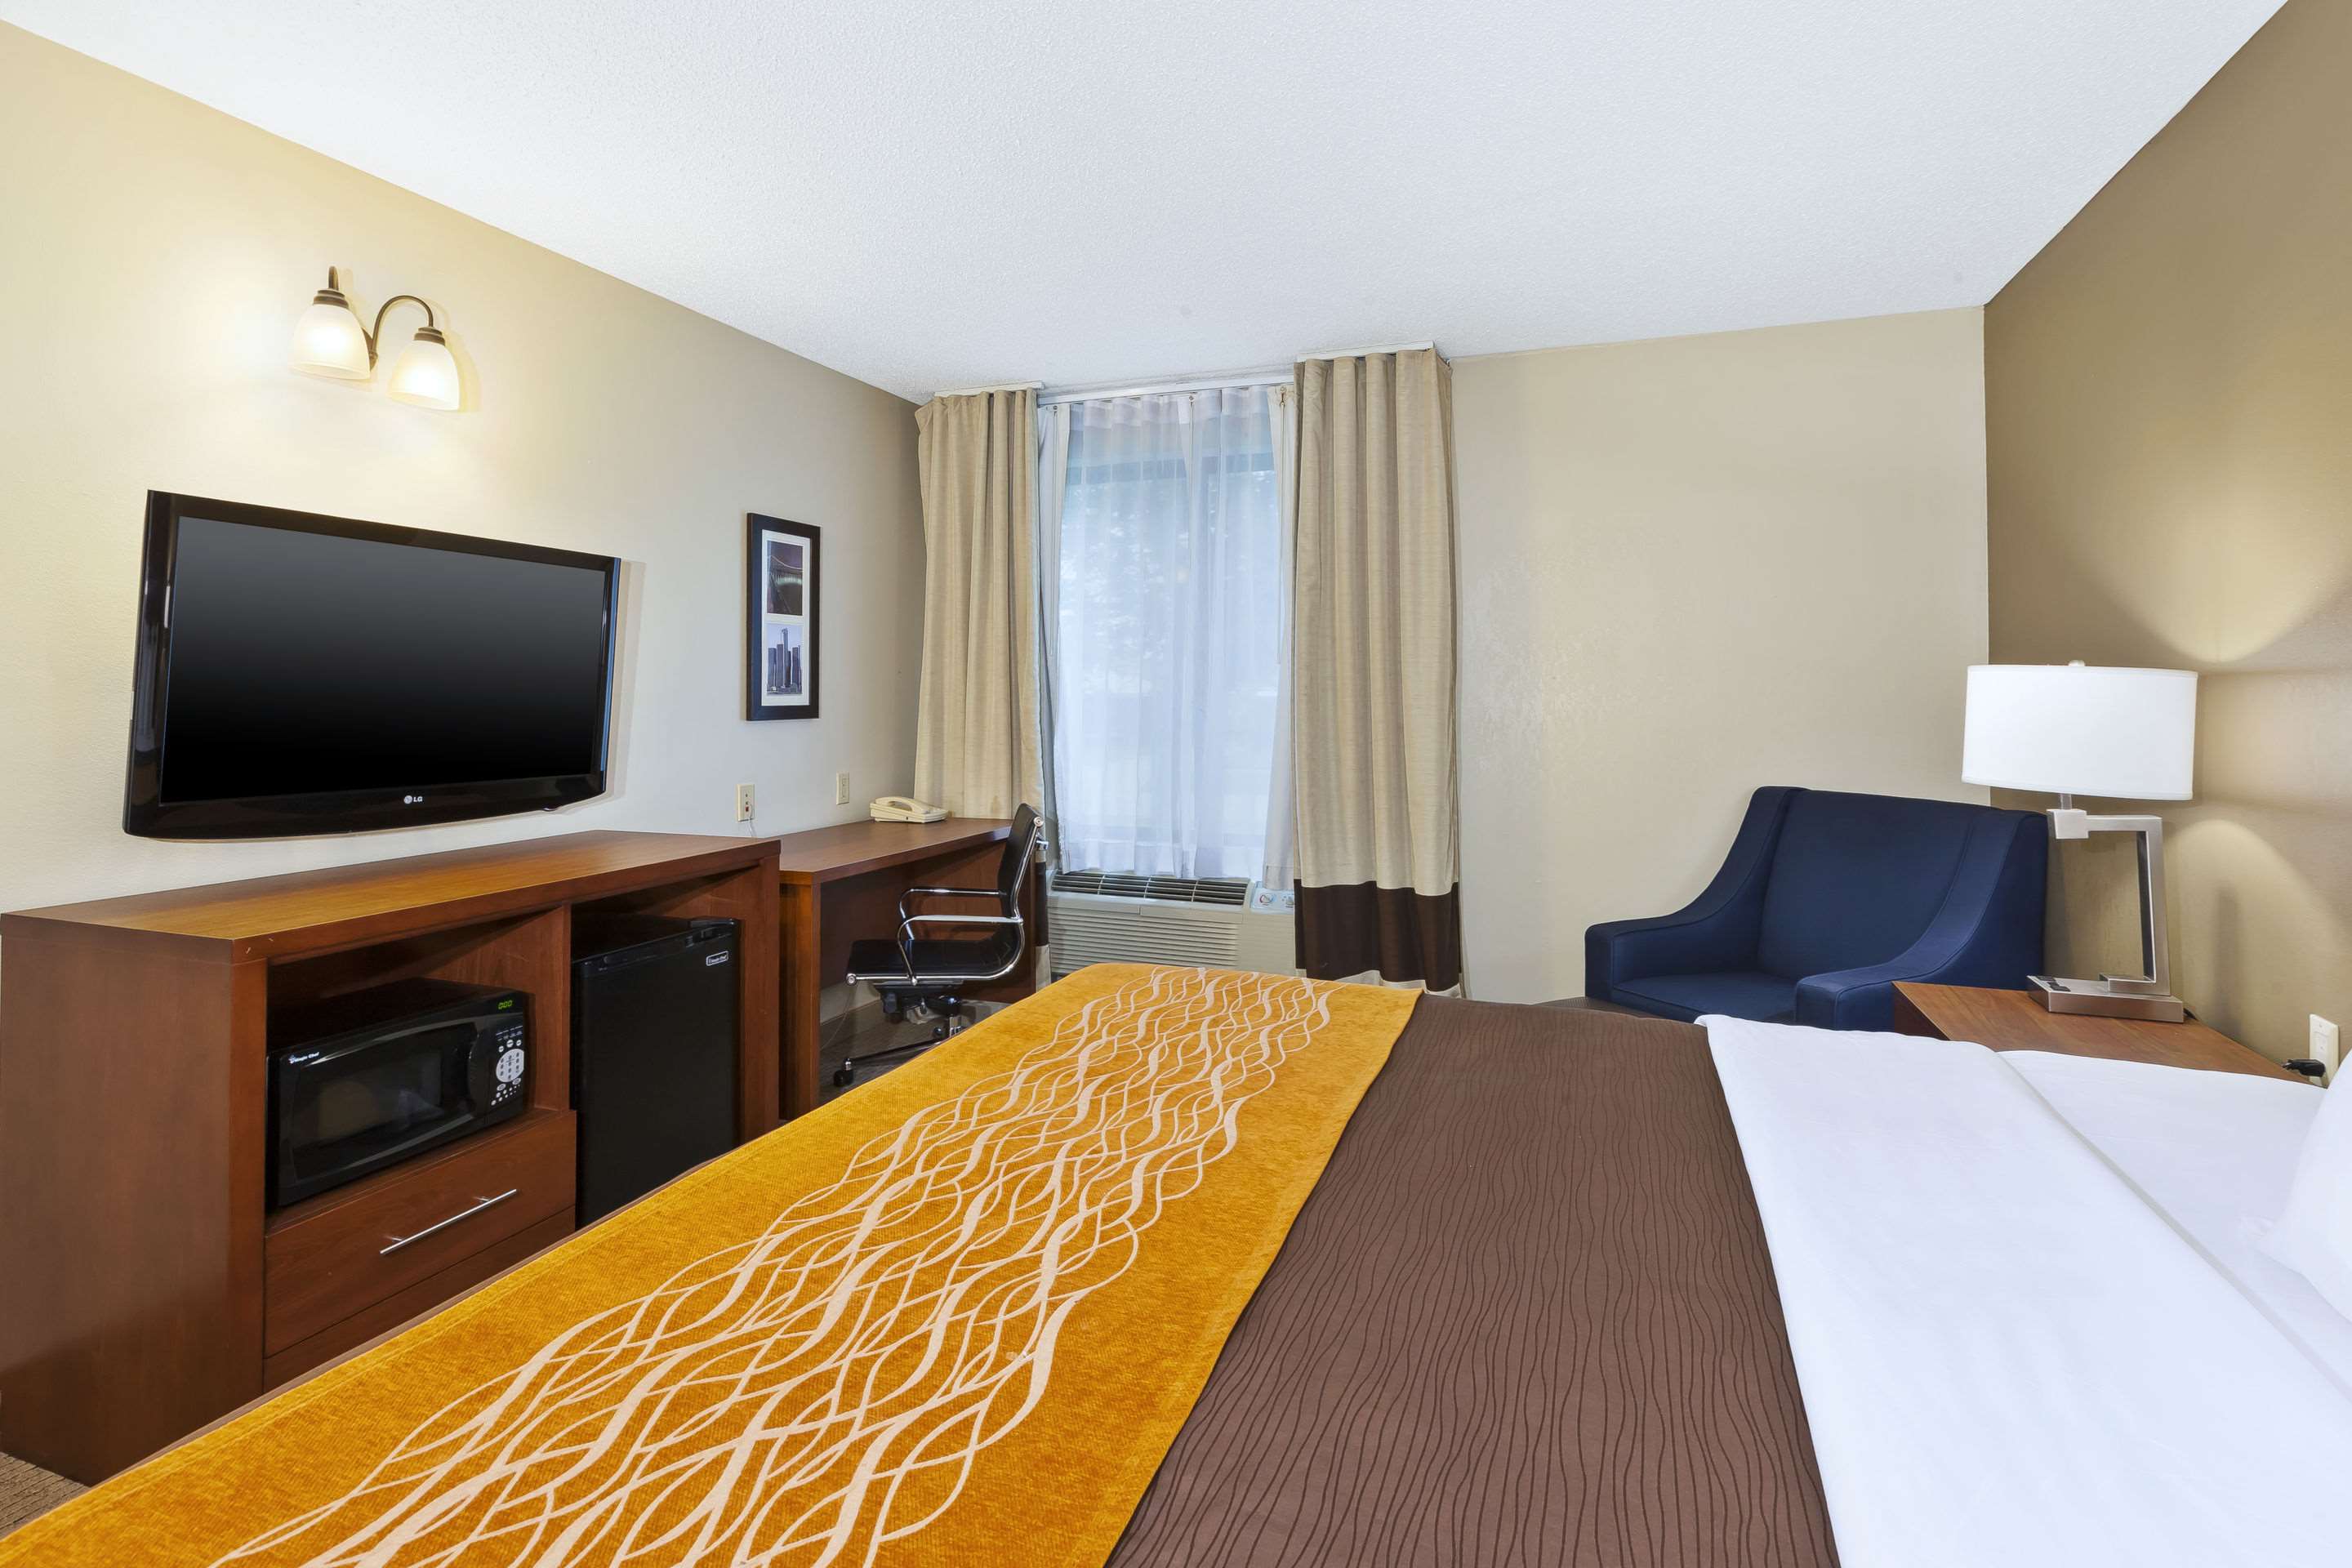 Comfort Inn & Suites Photo